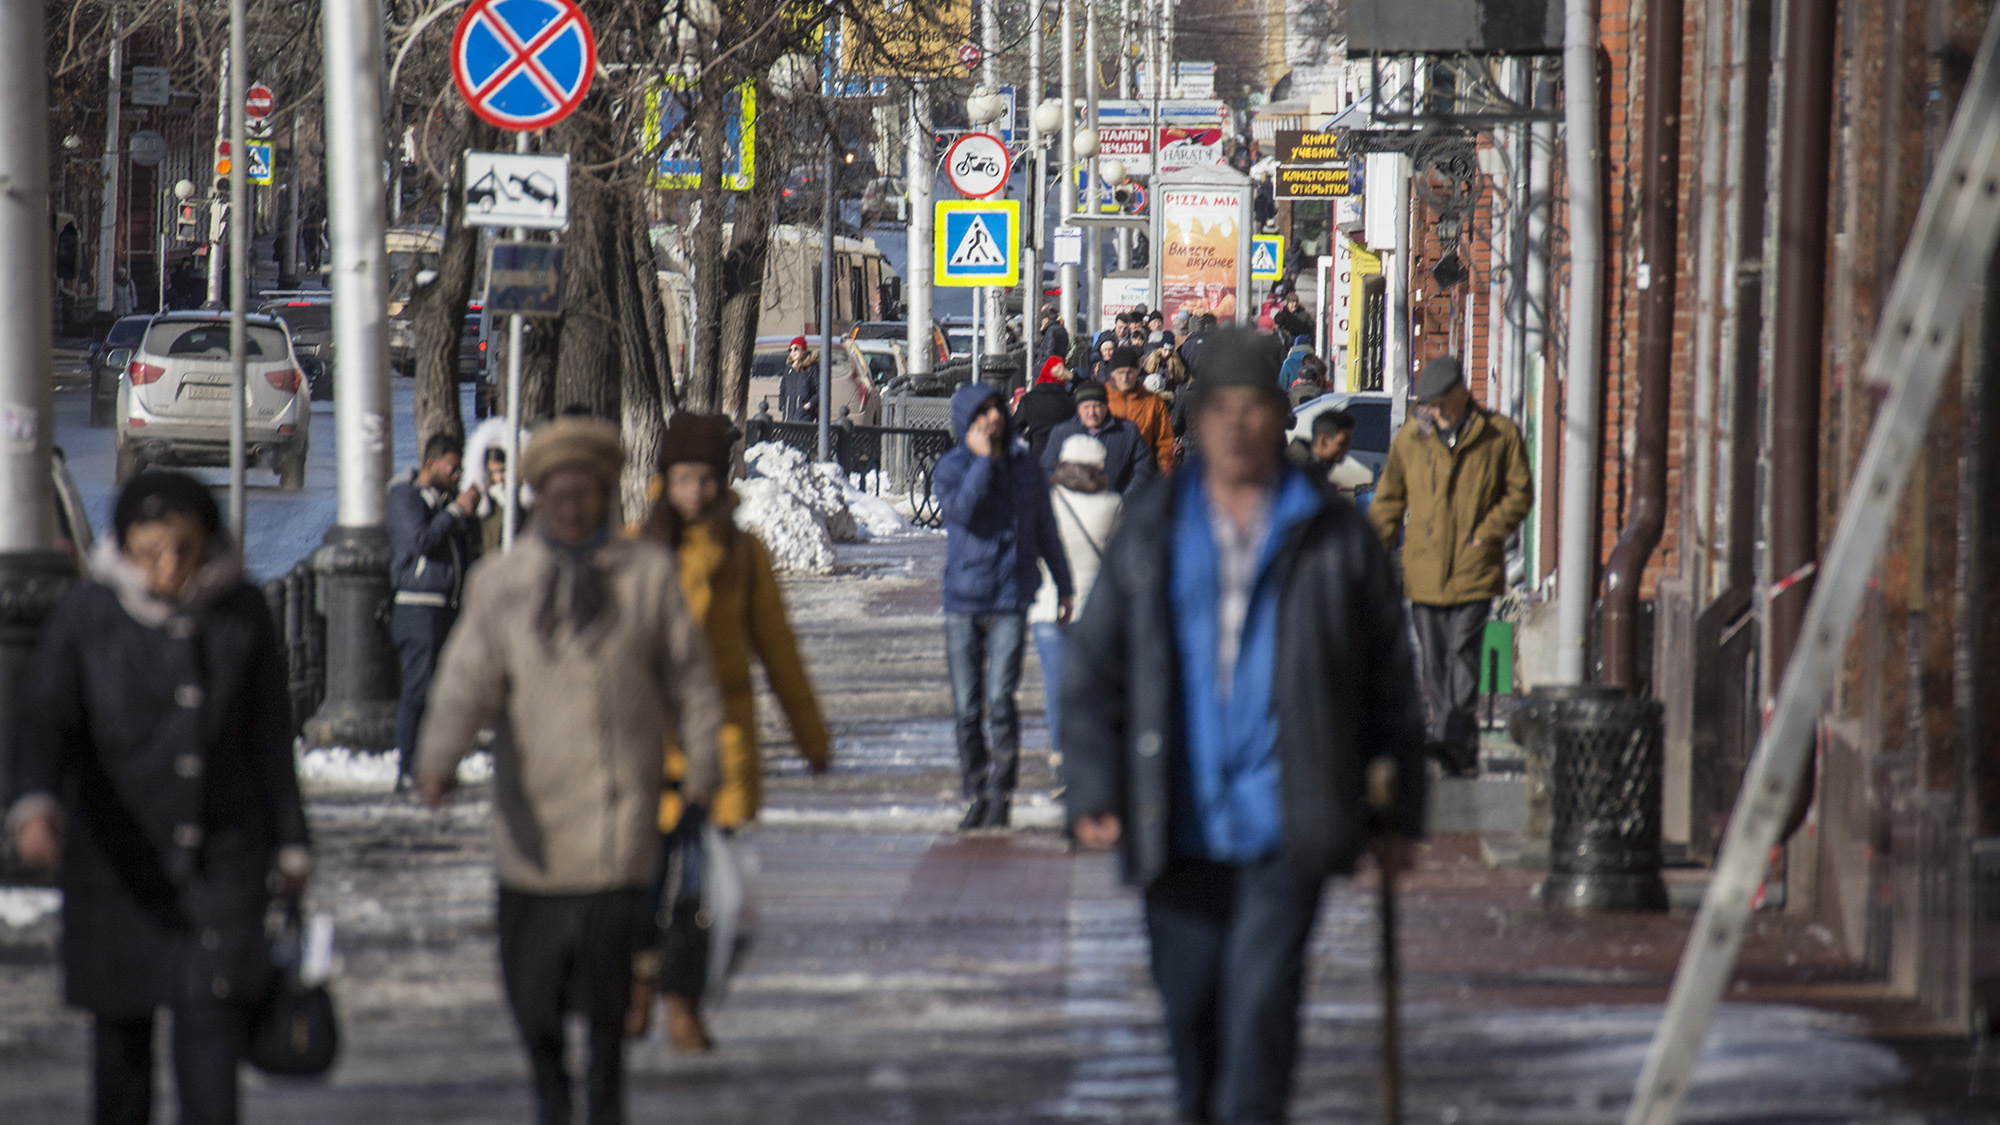 Раздеваться рано: синоптики обещают снег с дождем на выходной день в Уфе и Башкирии